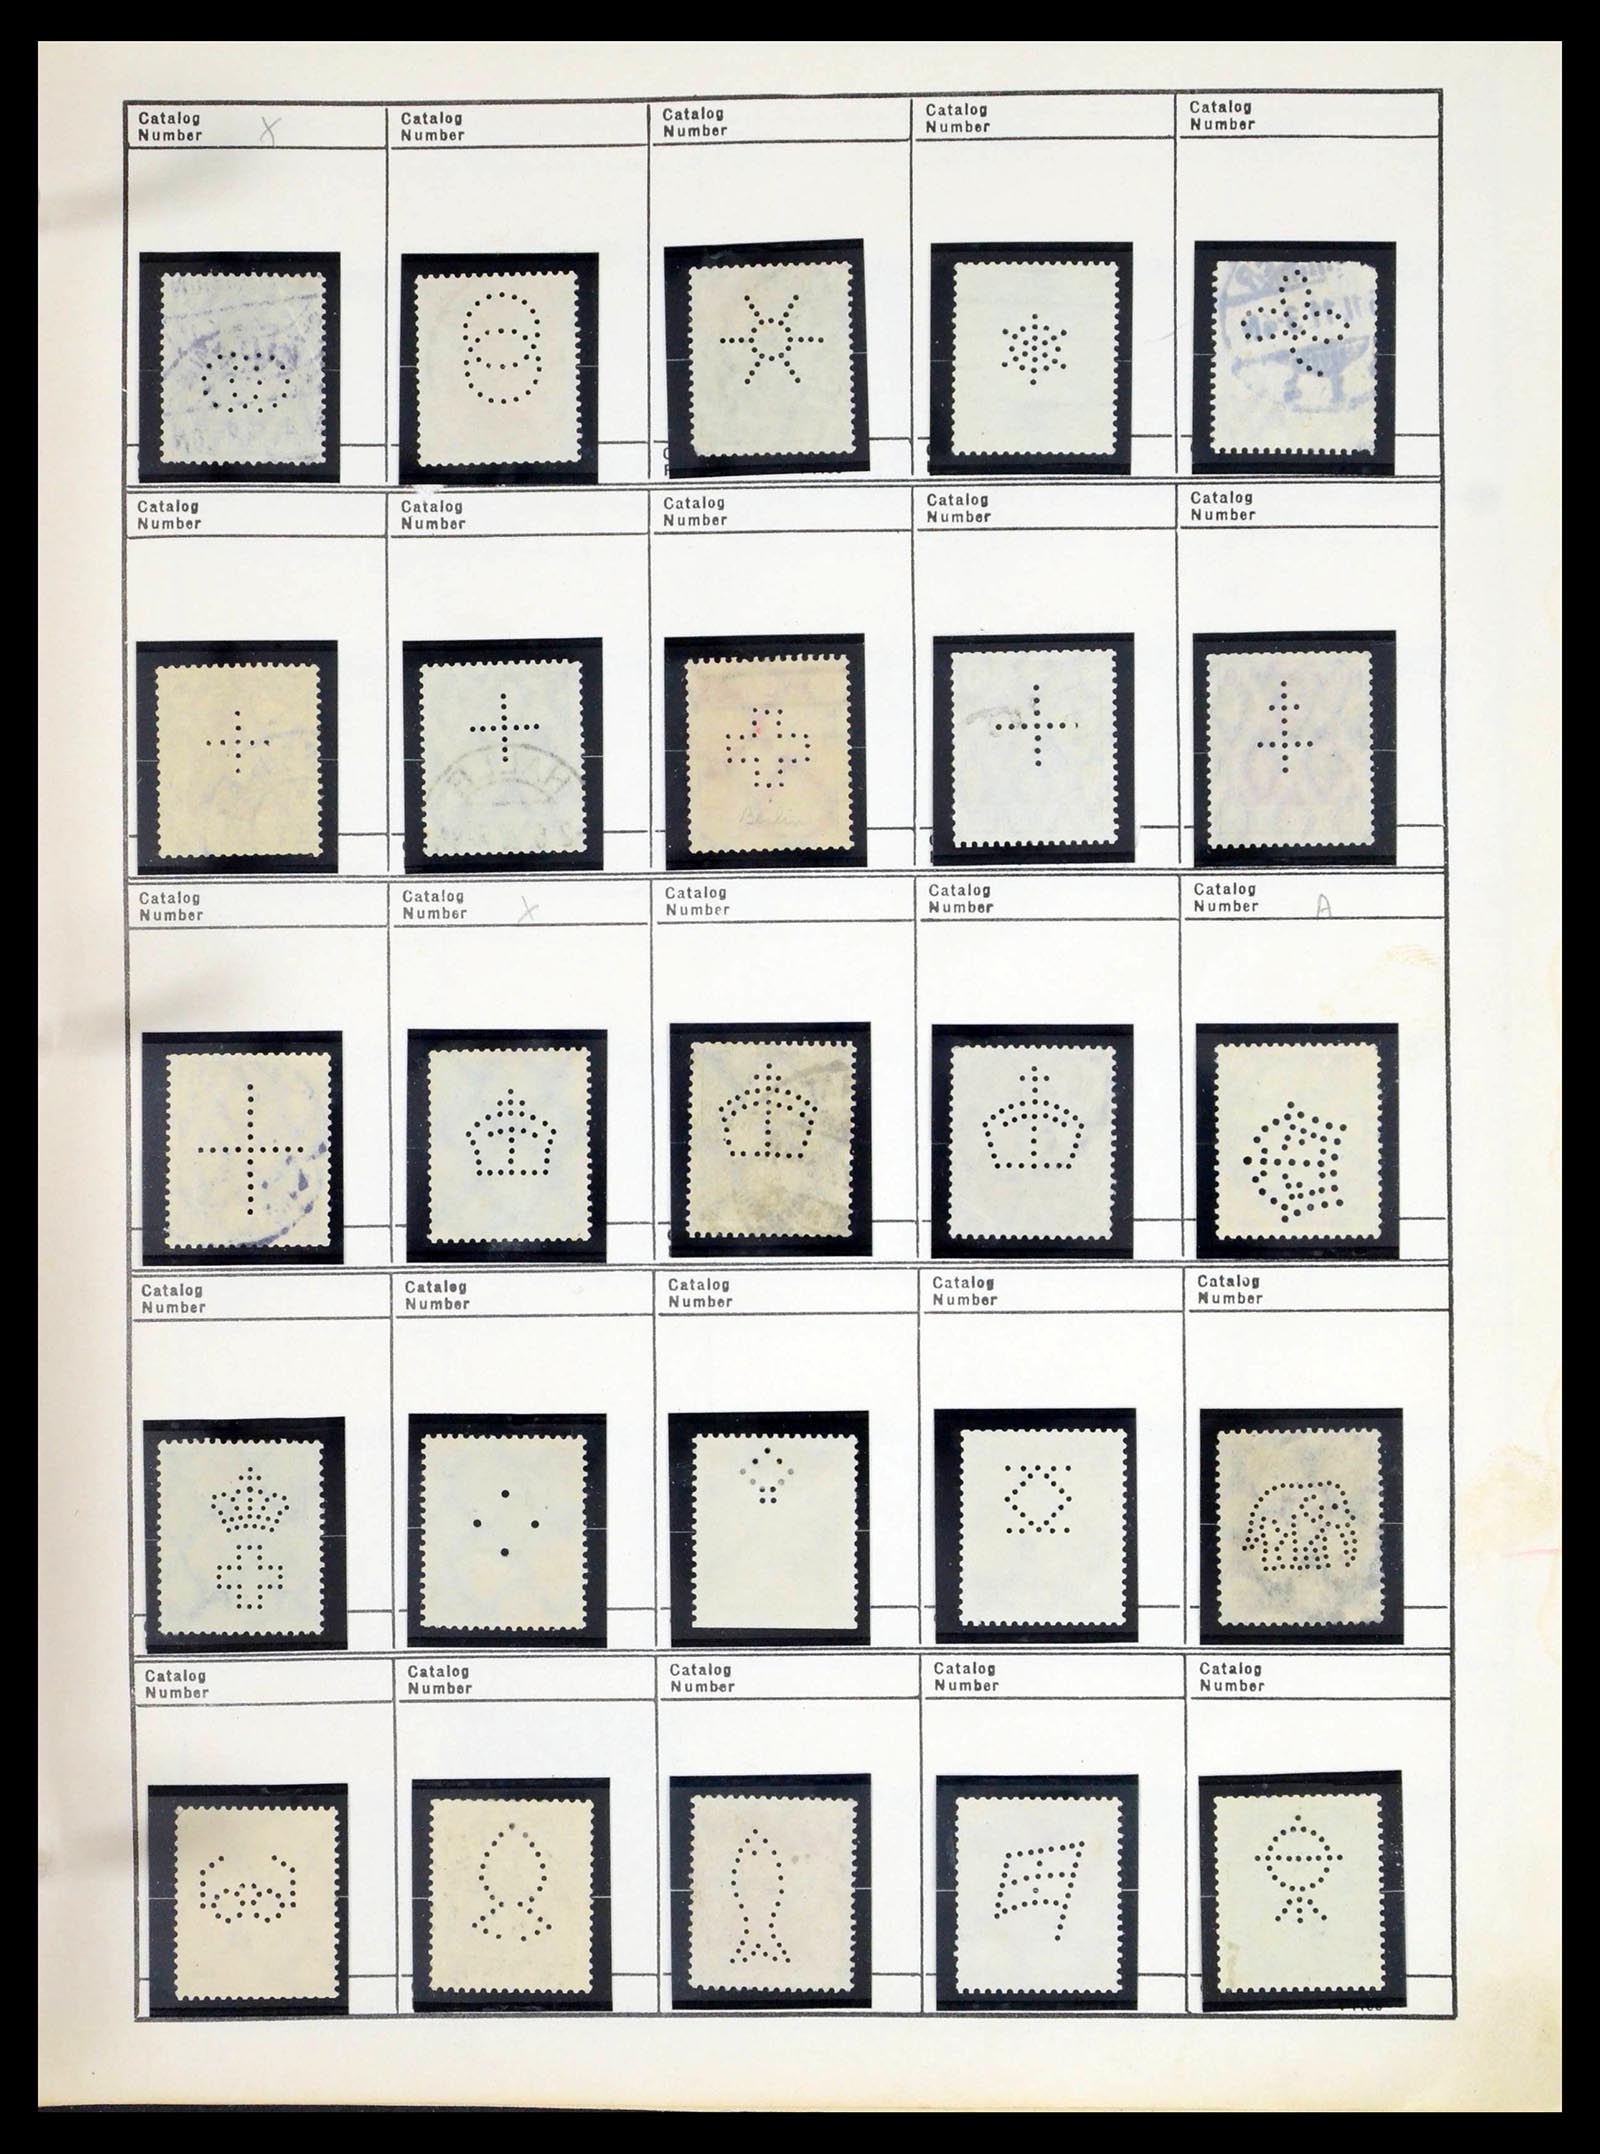 39480 0594 - Stamp collection 39480 German Reich perfins 1880-1955.